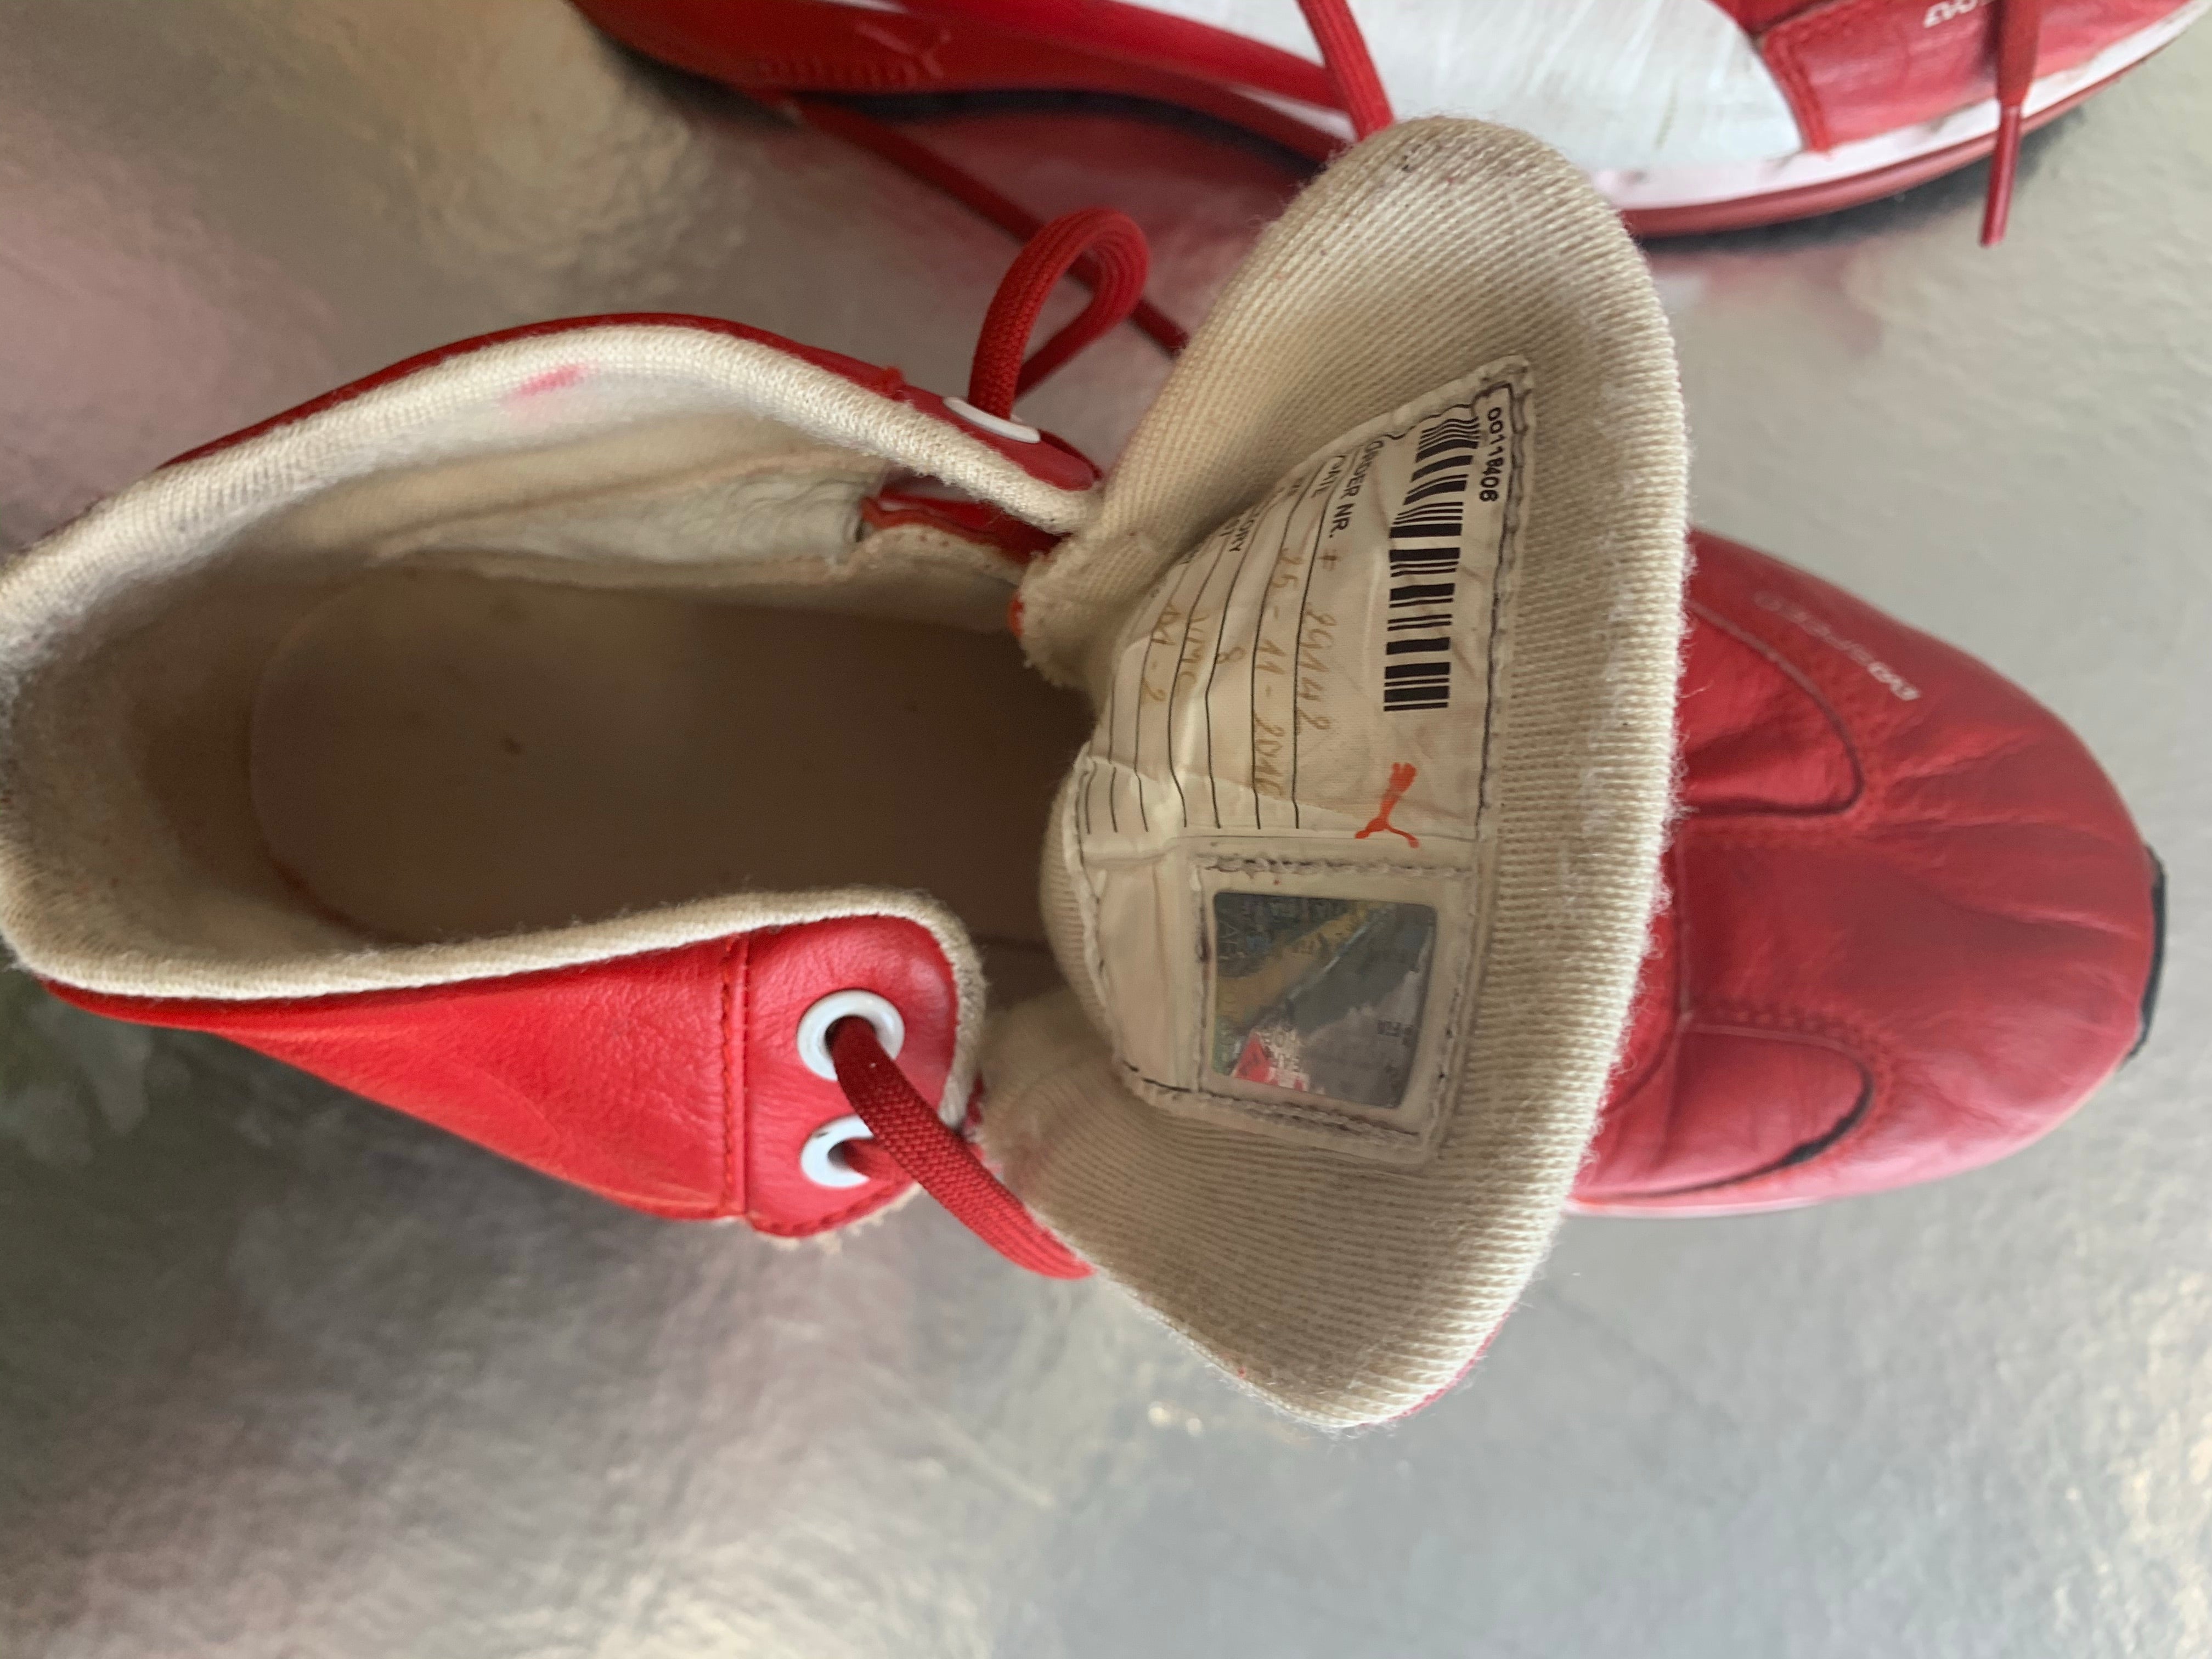 Original Pit Stop shoes / boots for Ferrari's 70th season 2017 - Size 8